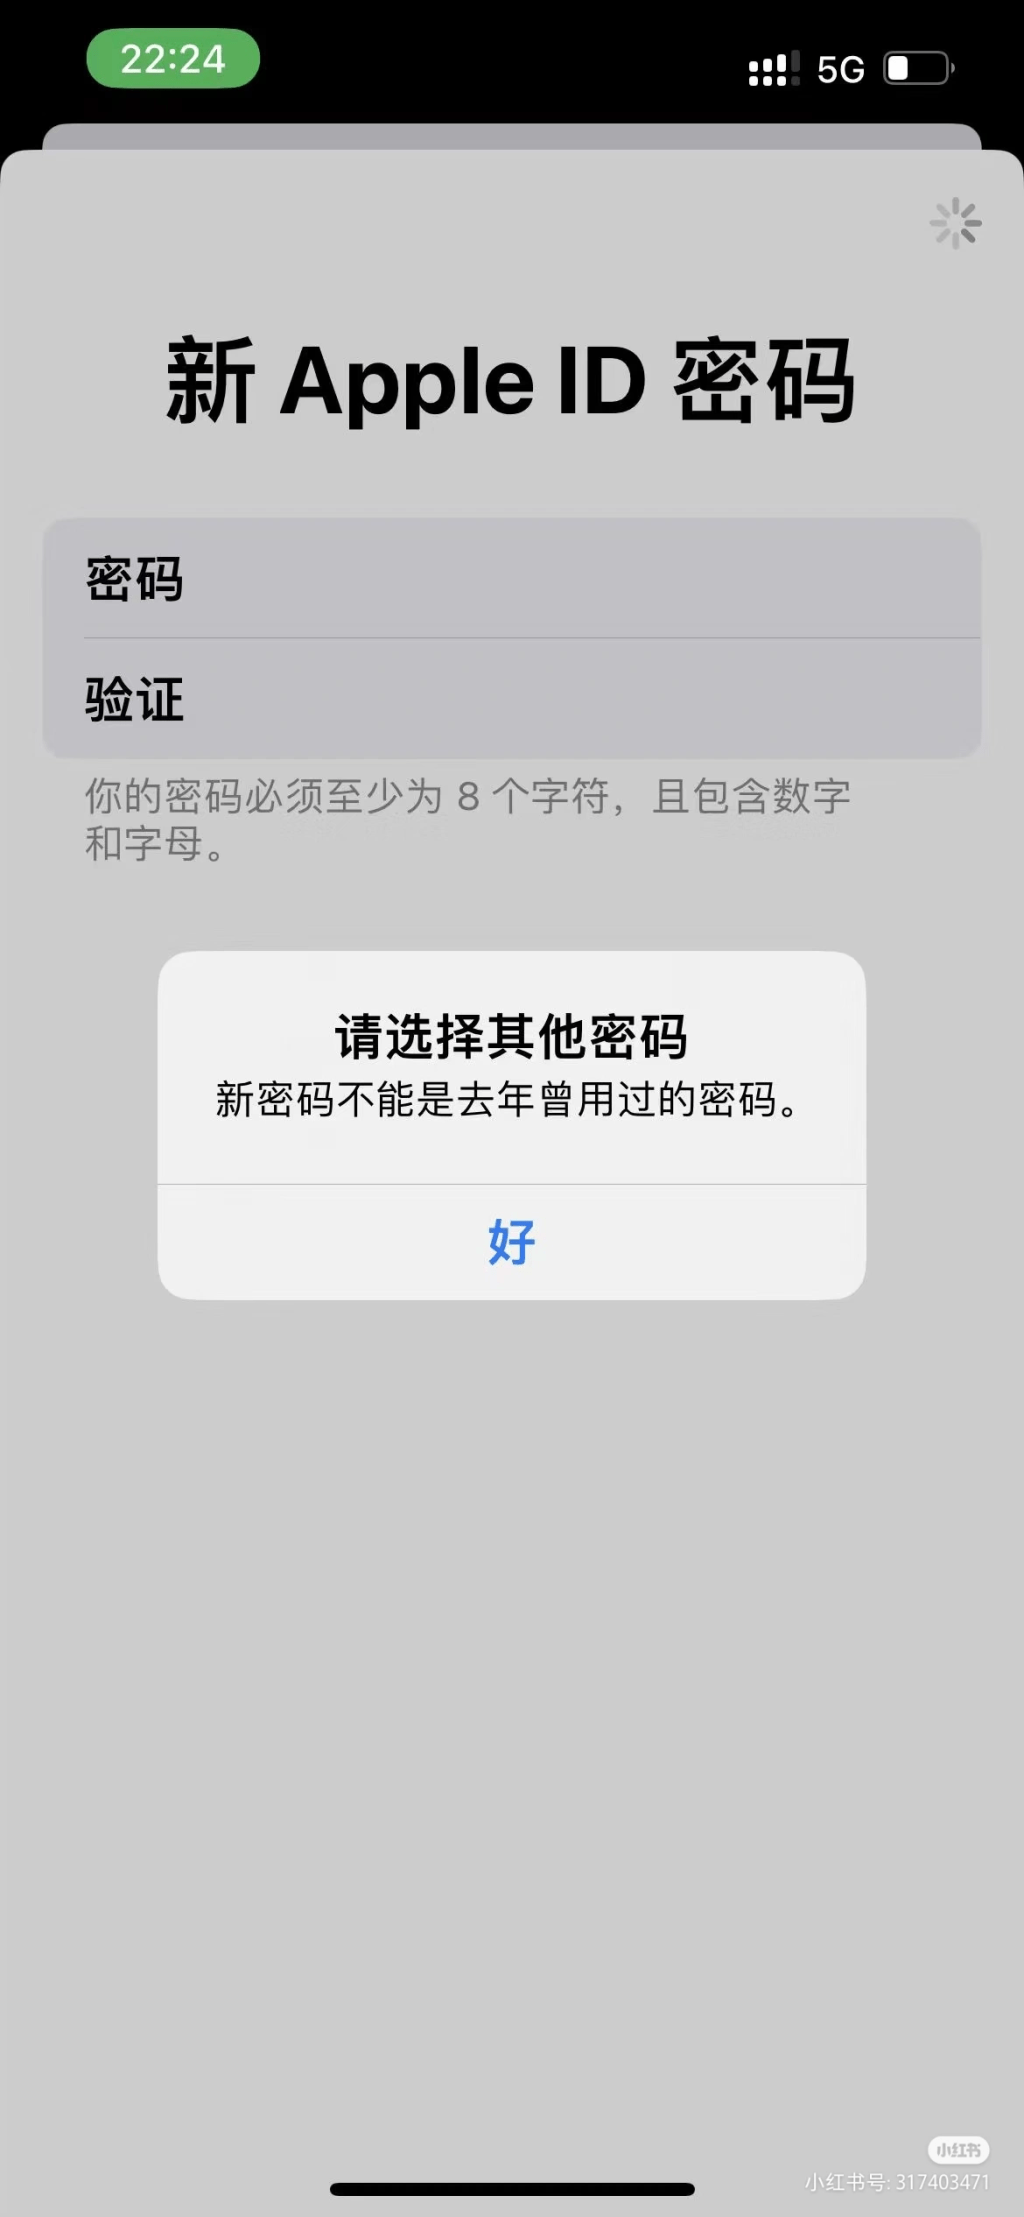 网民于小红书高呼：iOS用户有难了！（图片来源：小红书）